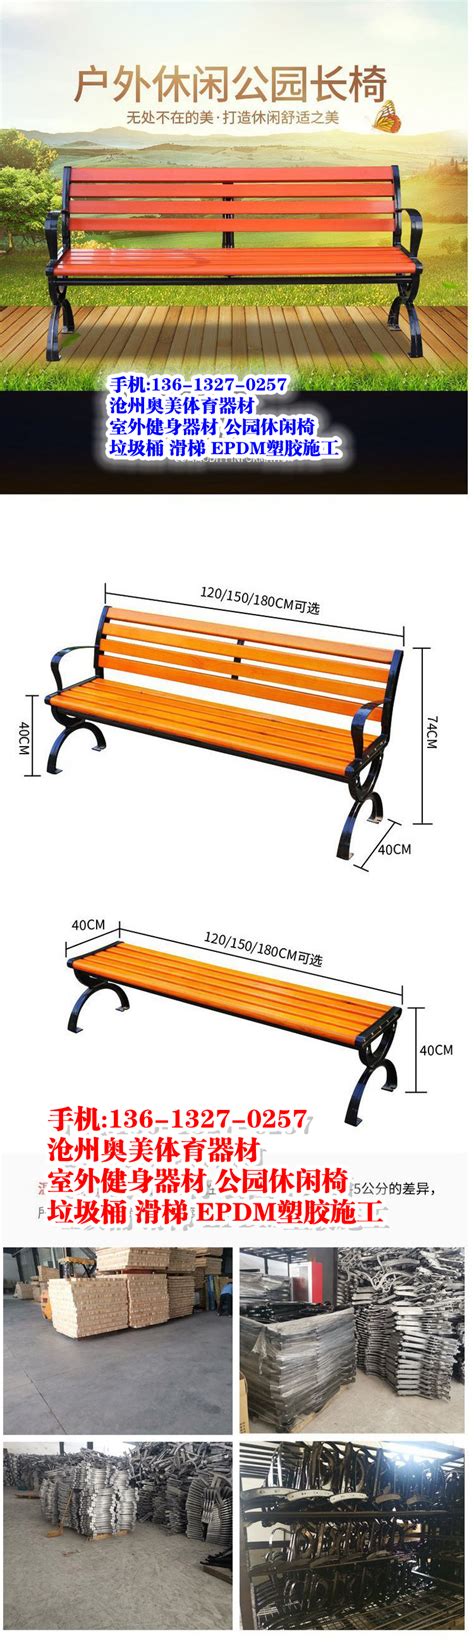 绥化海伦市户外公园椅广场椅大排档桌椅铝合金材质可定制销售--06分钟前更新 – 供应信息 - 建材网